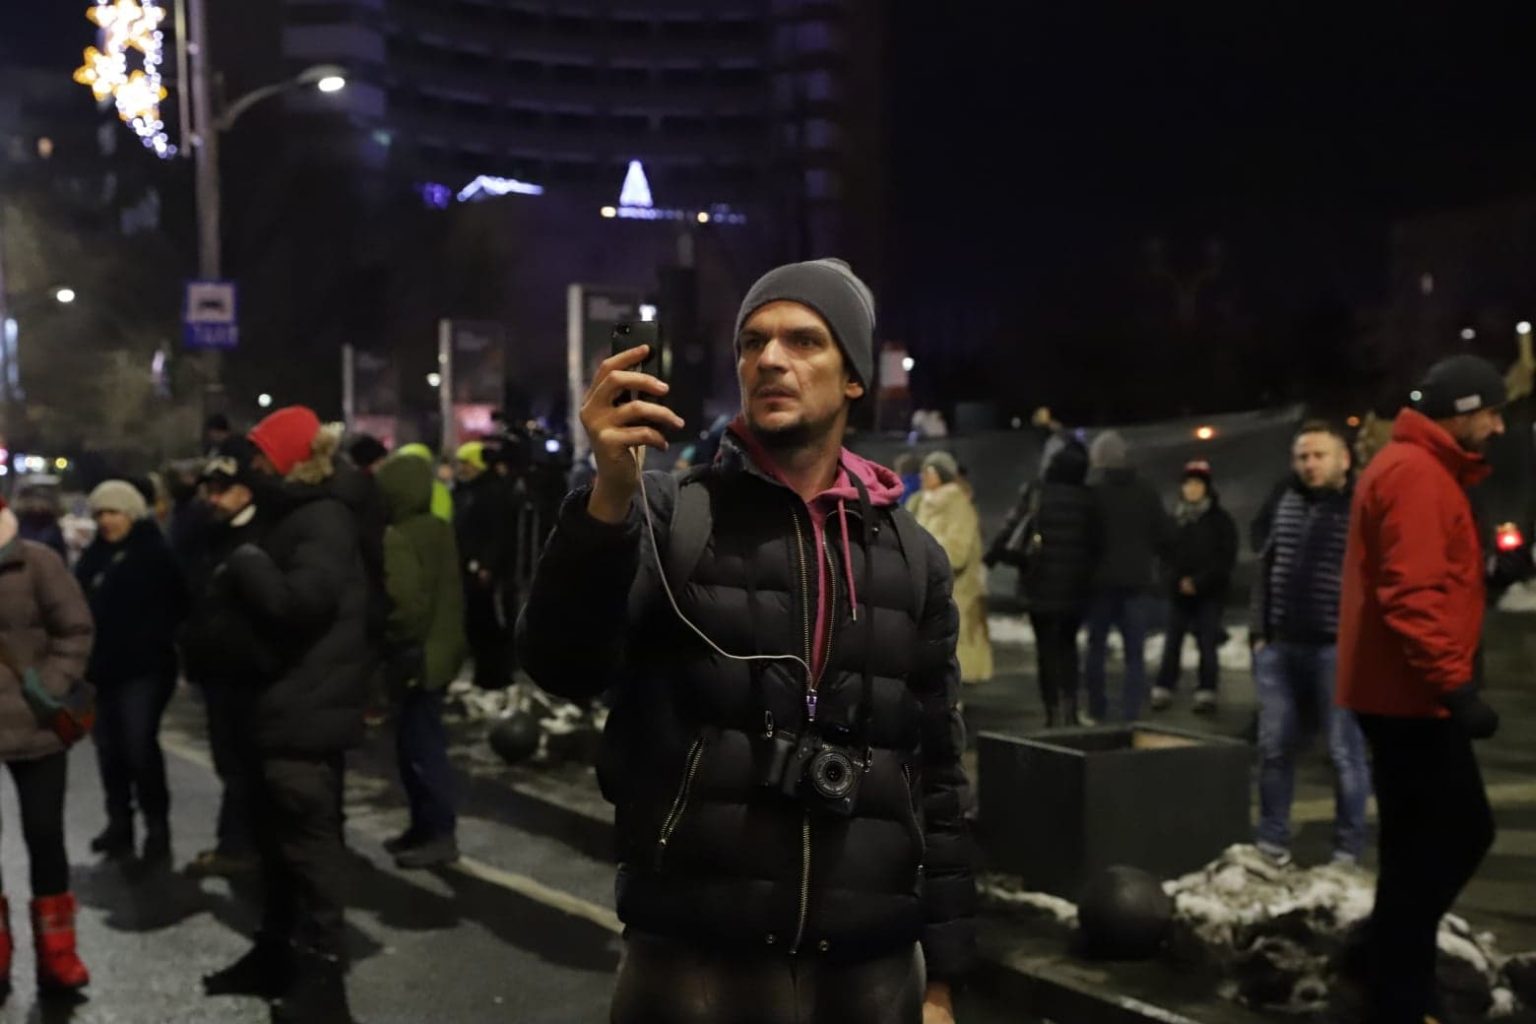 Tudor Chirilă vrea sa se dea ordin ca protestatarii lui Șoșoacă să fie gazați ca in 10 august 2018